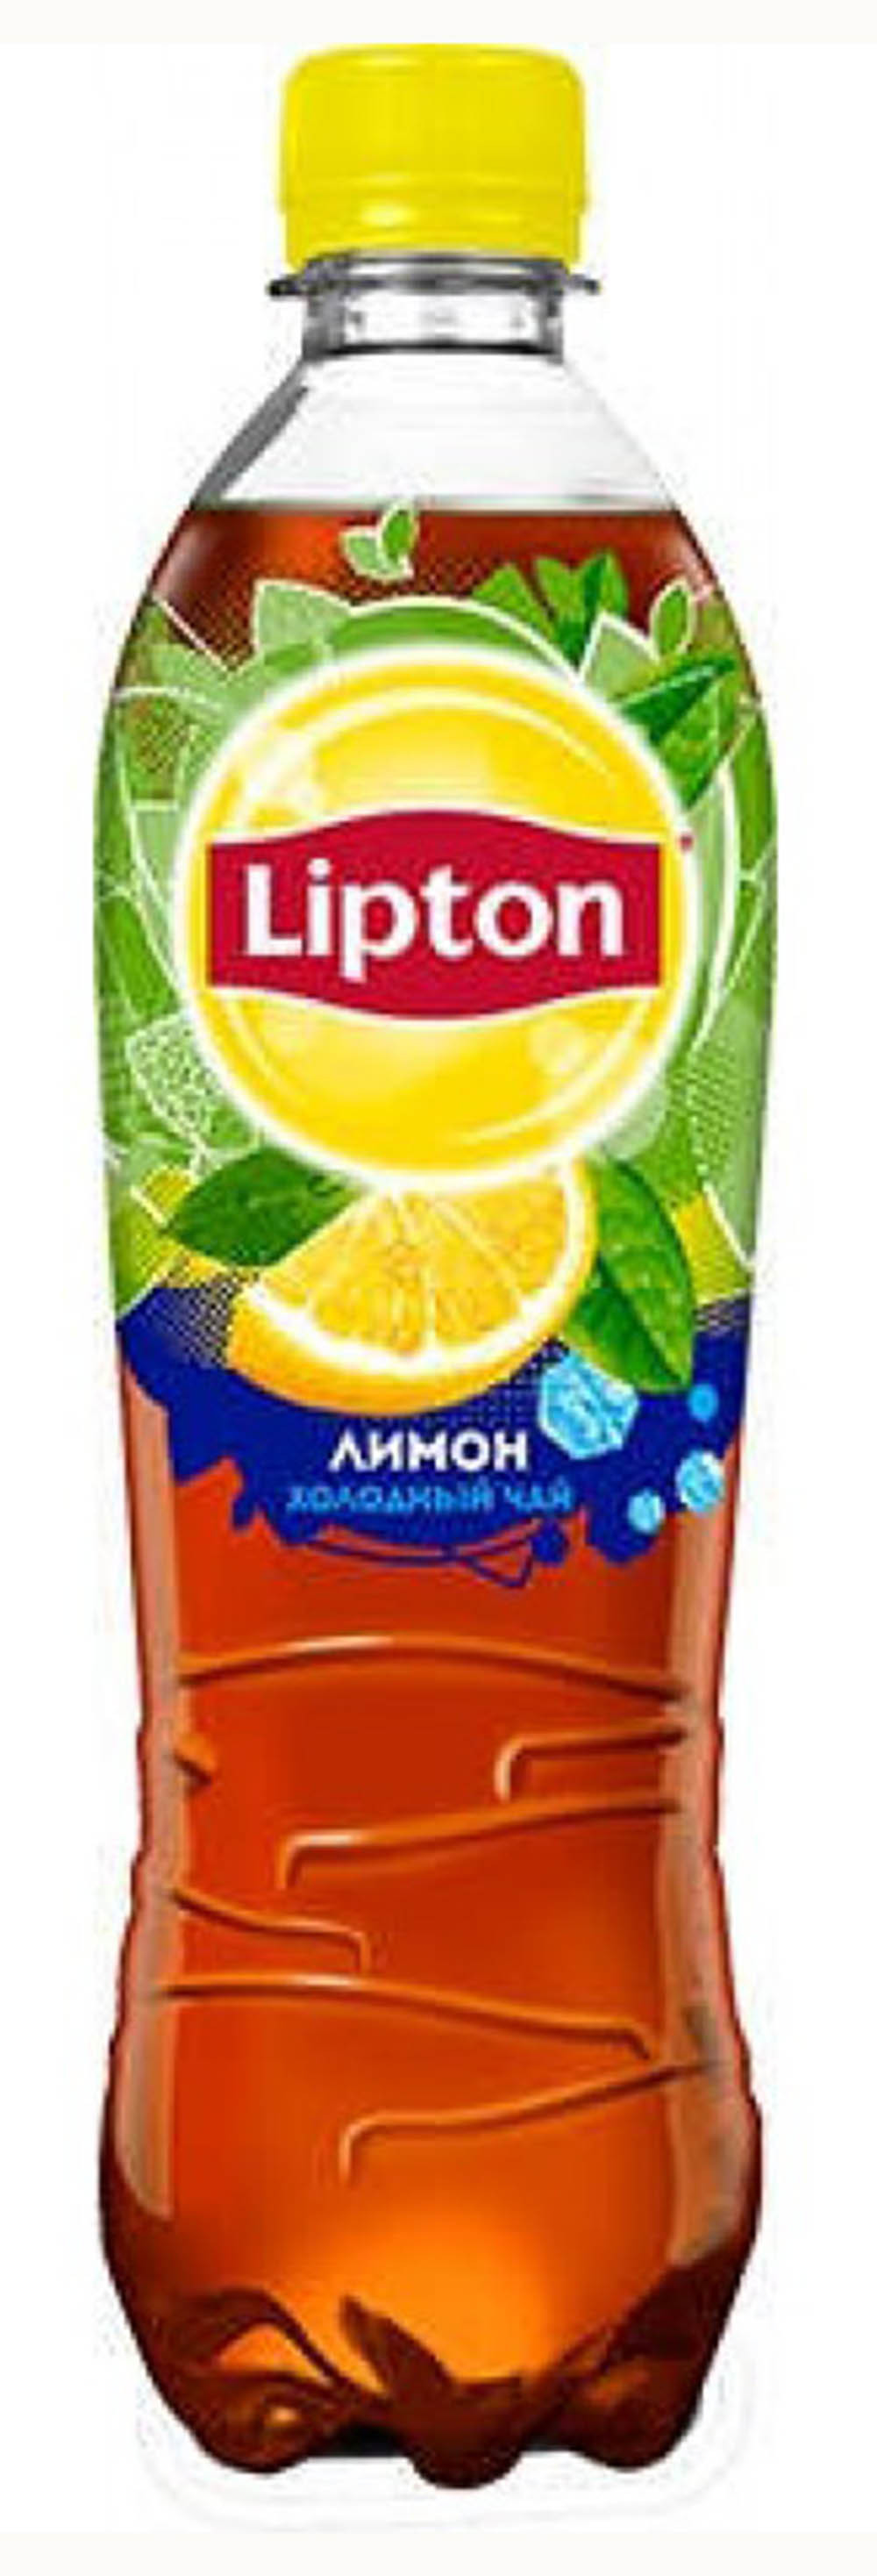 Напиток Освеж чайный Липтон лимон 0.5 л - интернет-магазин Близнецы